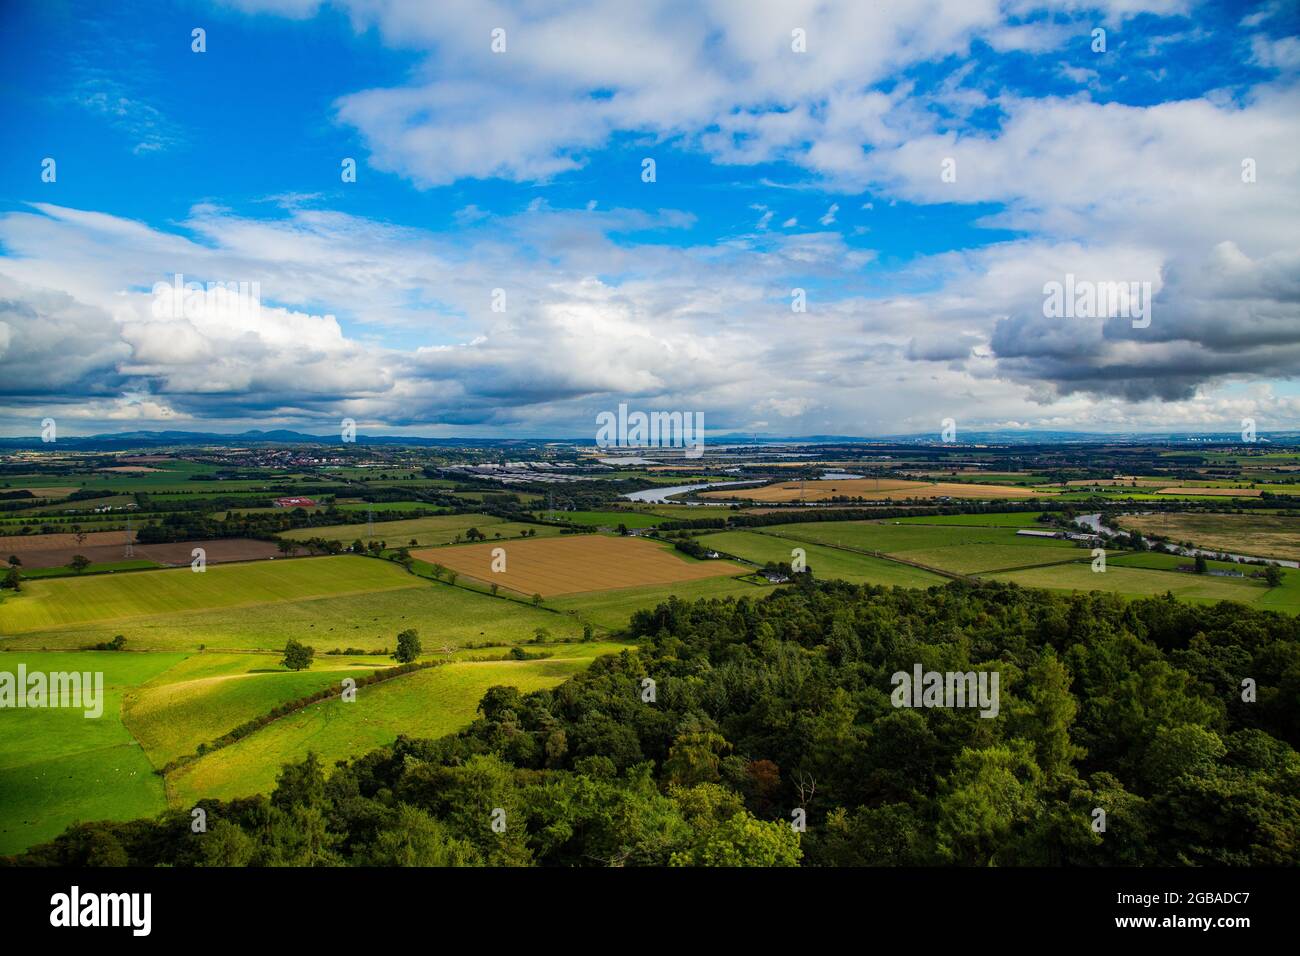 Vista de paisaje con meandro de rio, praderas verdes y montañas, desde el monumento a William Wallace Stock Photo